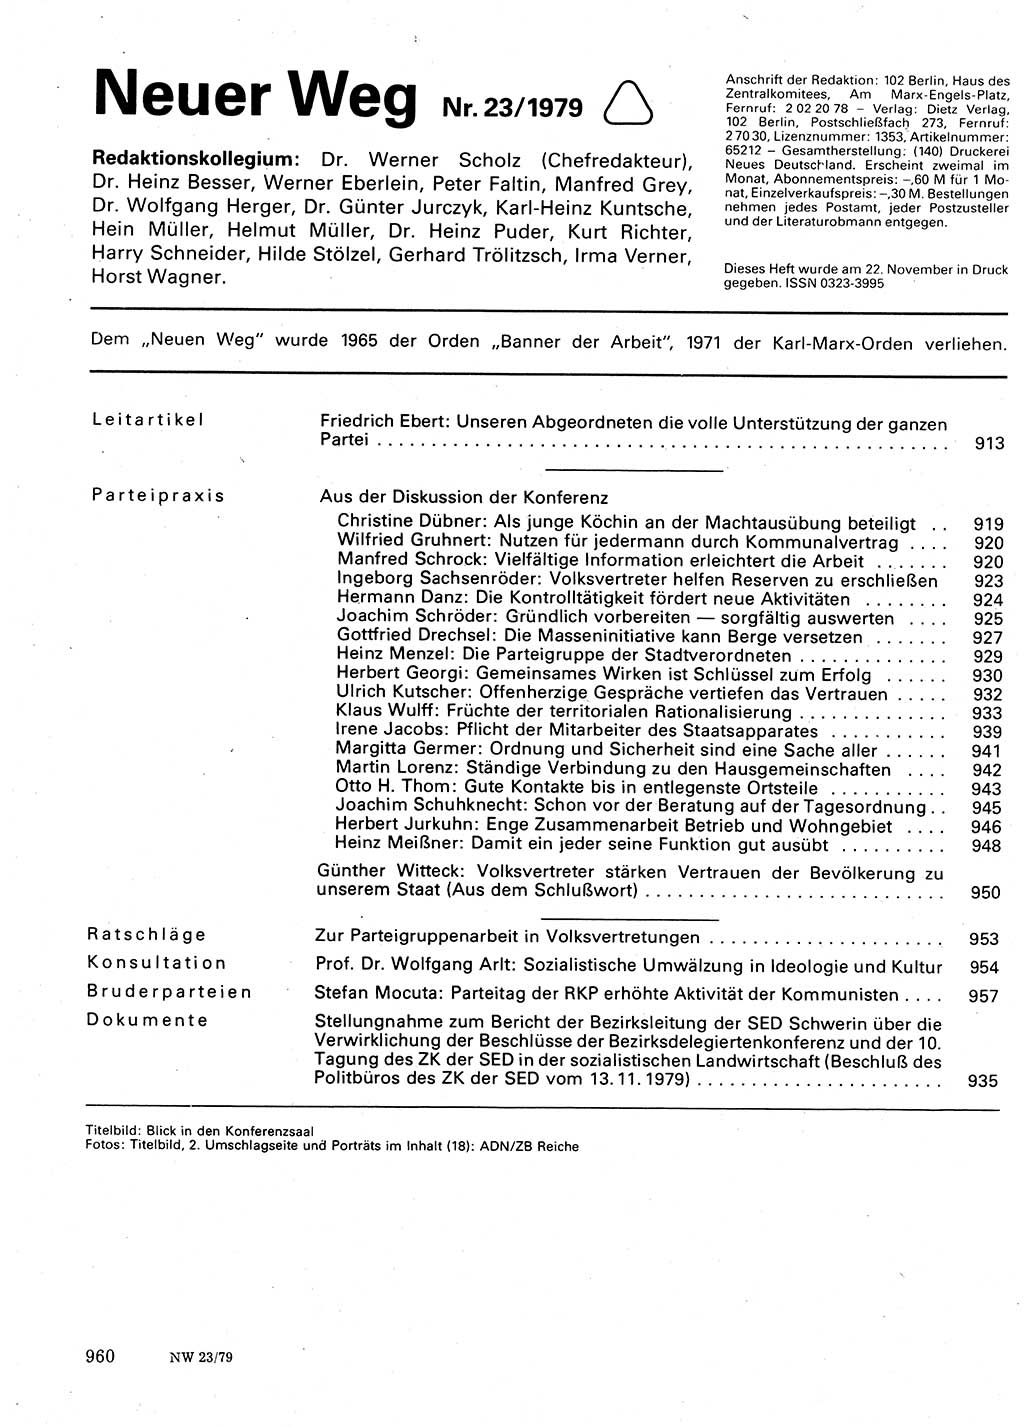 Neuer Weg (NW), Organ des Zentralkomitees (ZK) der SED (Sozialistische Einheitspartei Deutschlands) für Fragen des Parteilebens, 34. Jahrgang [Deutsche Demokratische Republik (DDR)] 1979, Seite 960 (NW ZK SED DDR 1979, S. 960)